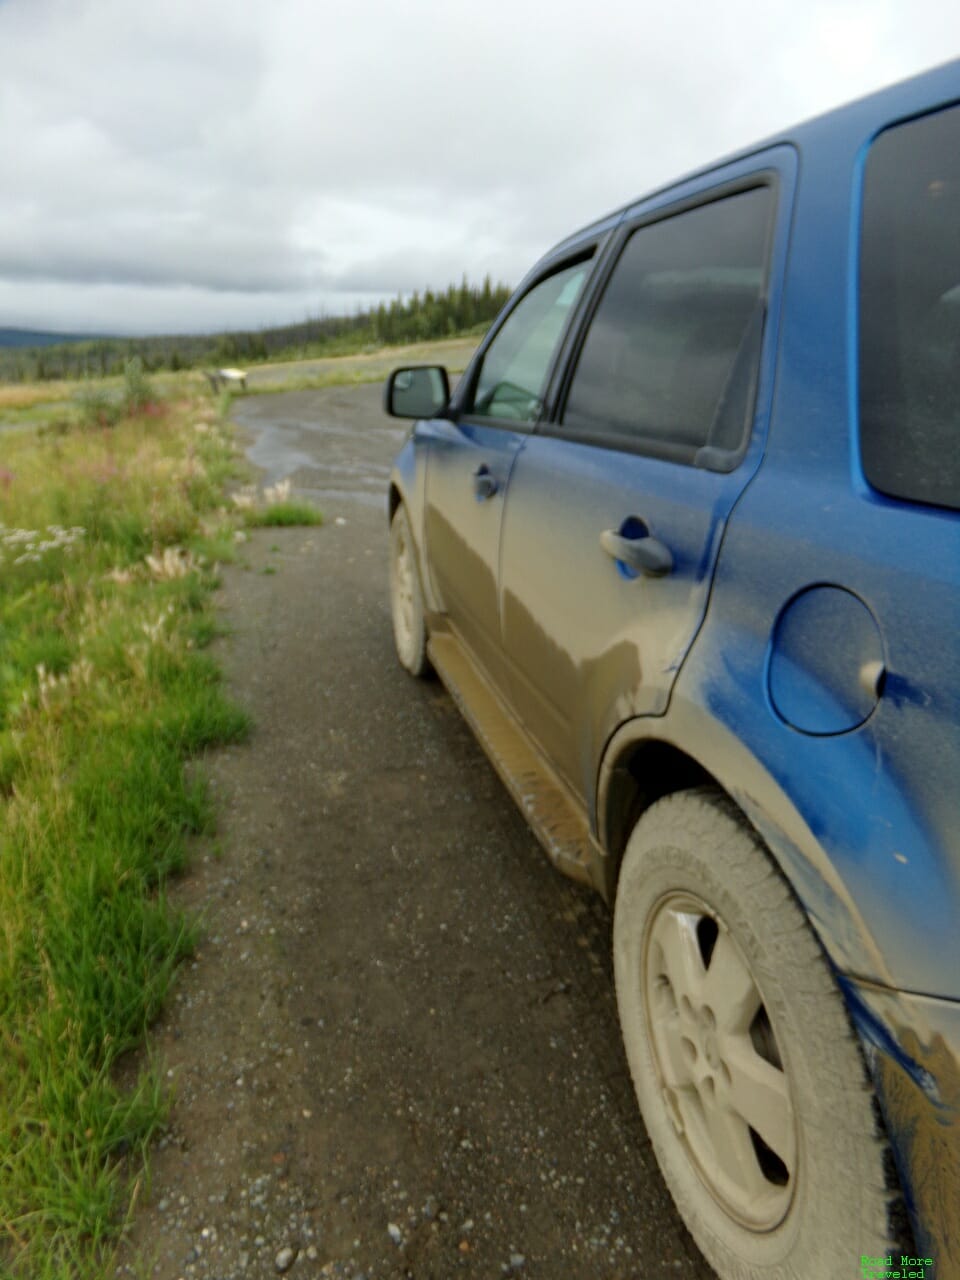 Muddy car doors